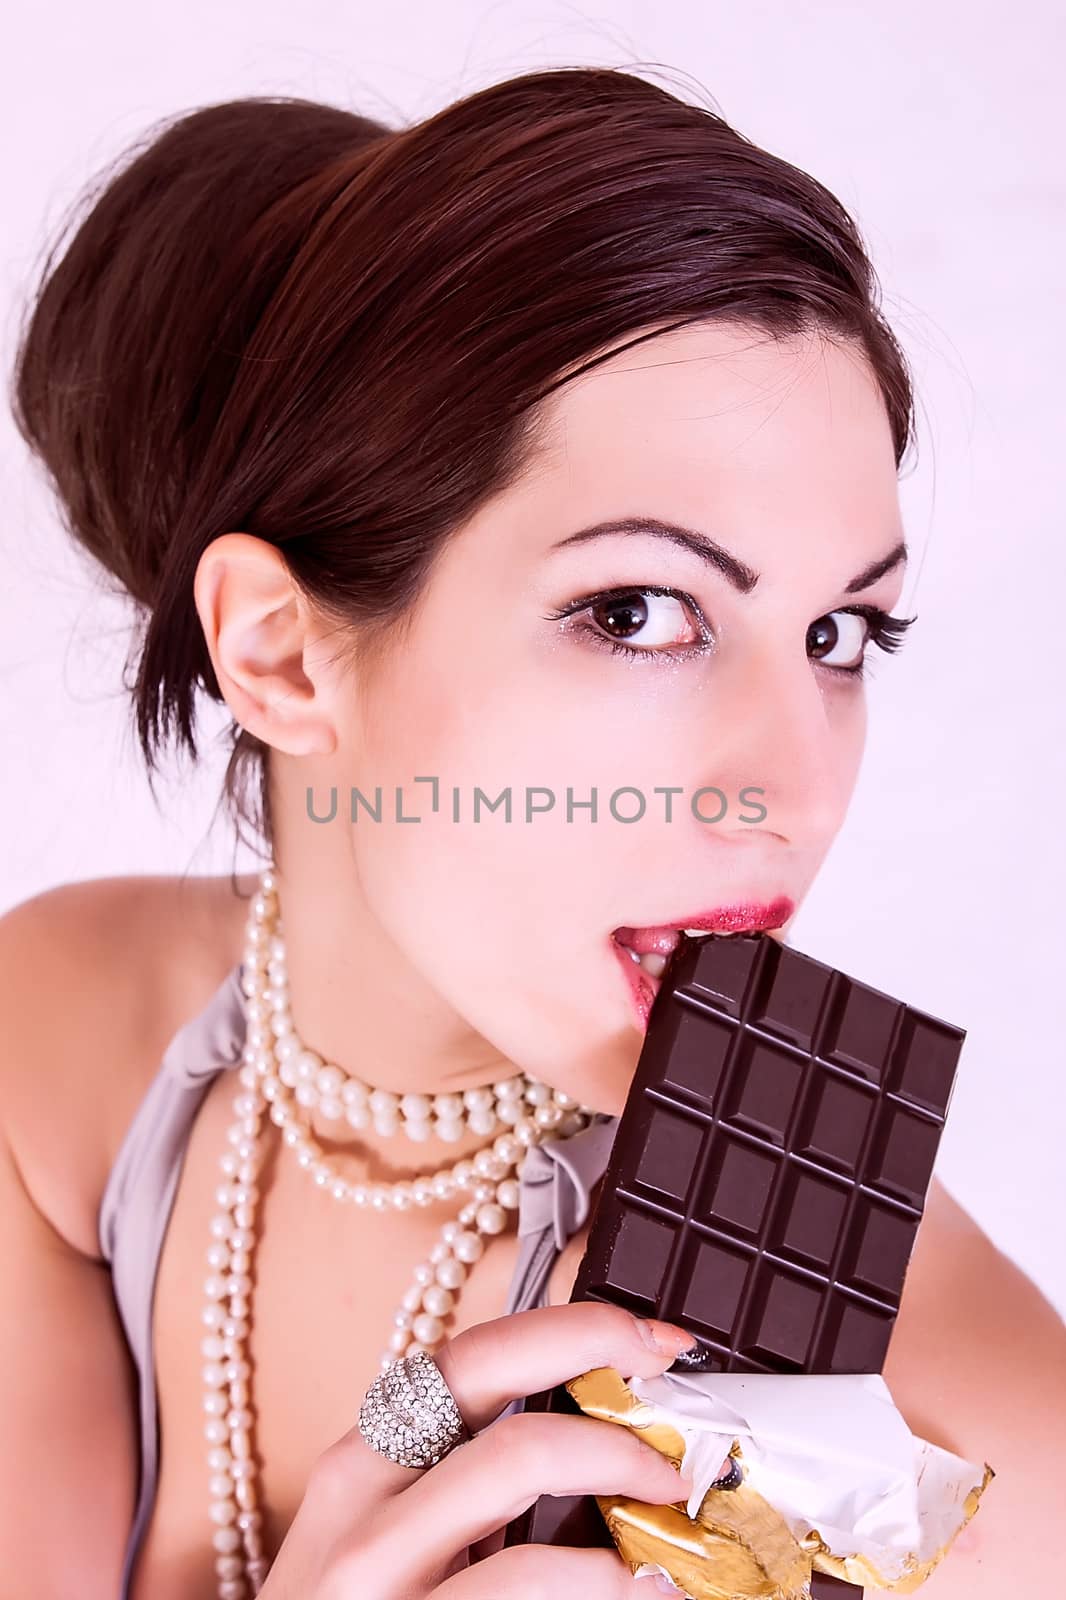 Beautiful girl eating chocolate by dukibu